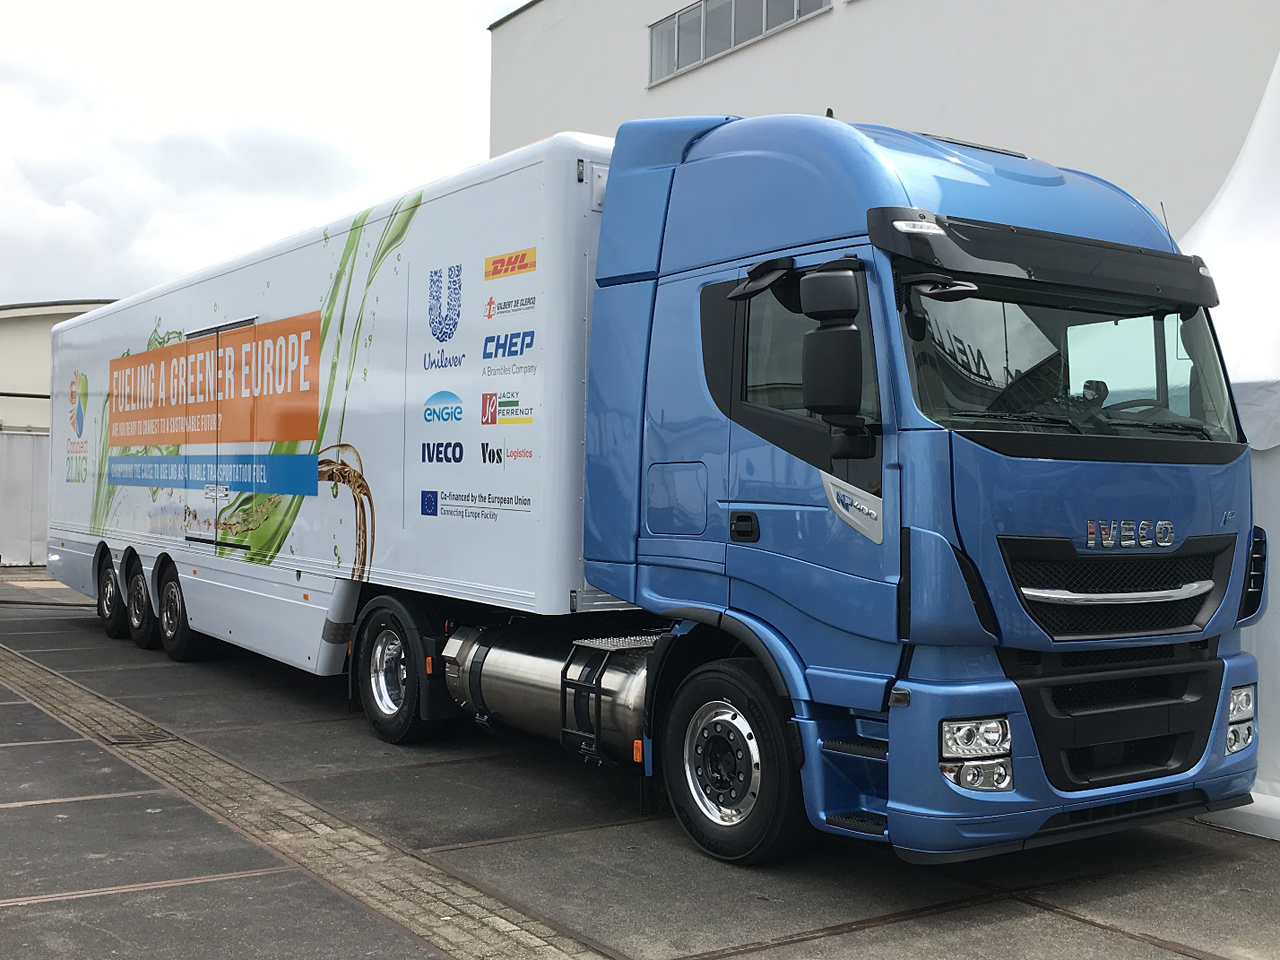 A távolsági áruszállítás közúton is környezetbaráttá tehető LNG hajtású járművekkel, az IVECO mellett a Volvo és a Scania is megjelent környezetbarát típusával (forrás: MGKKE)